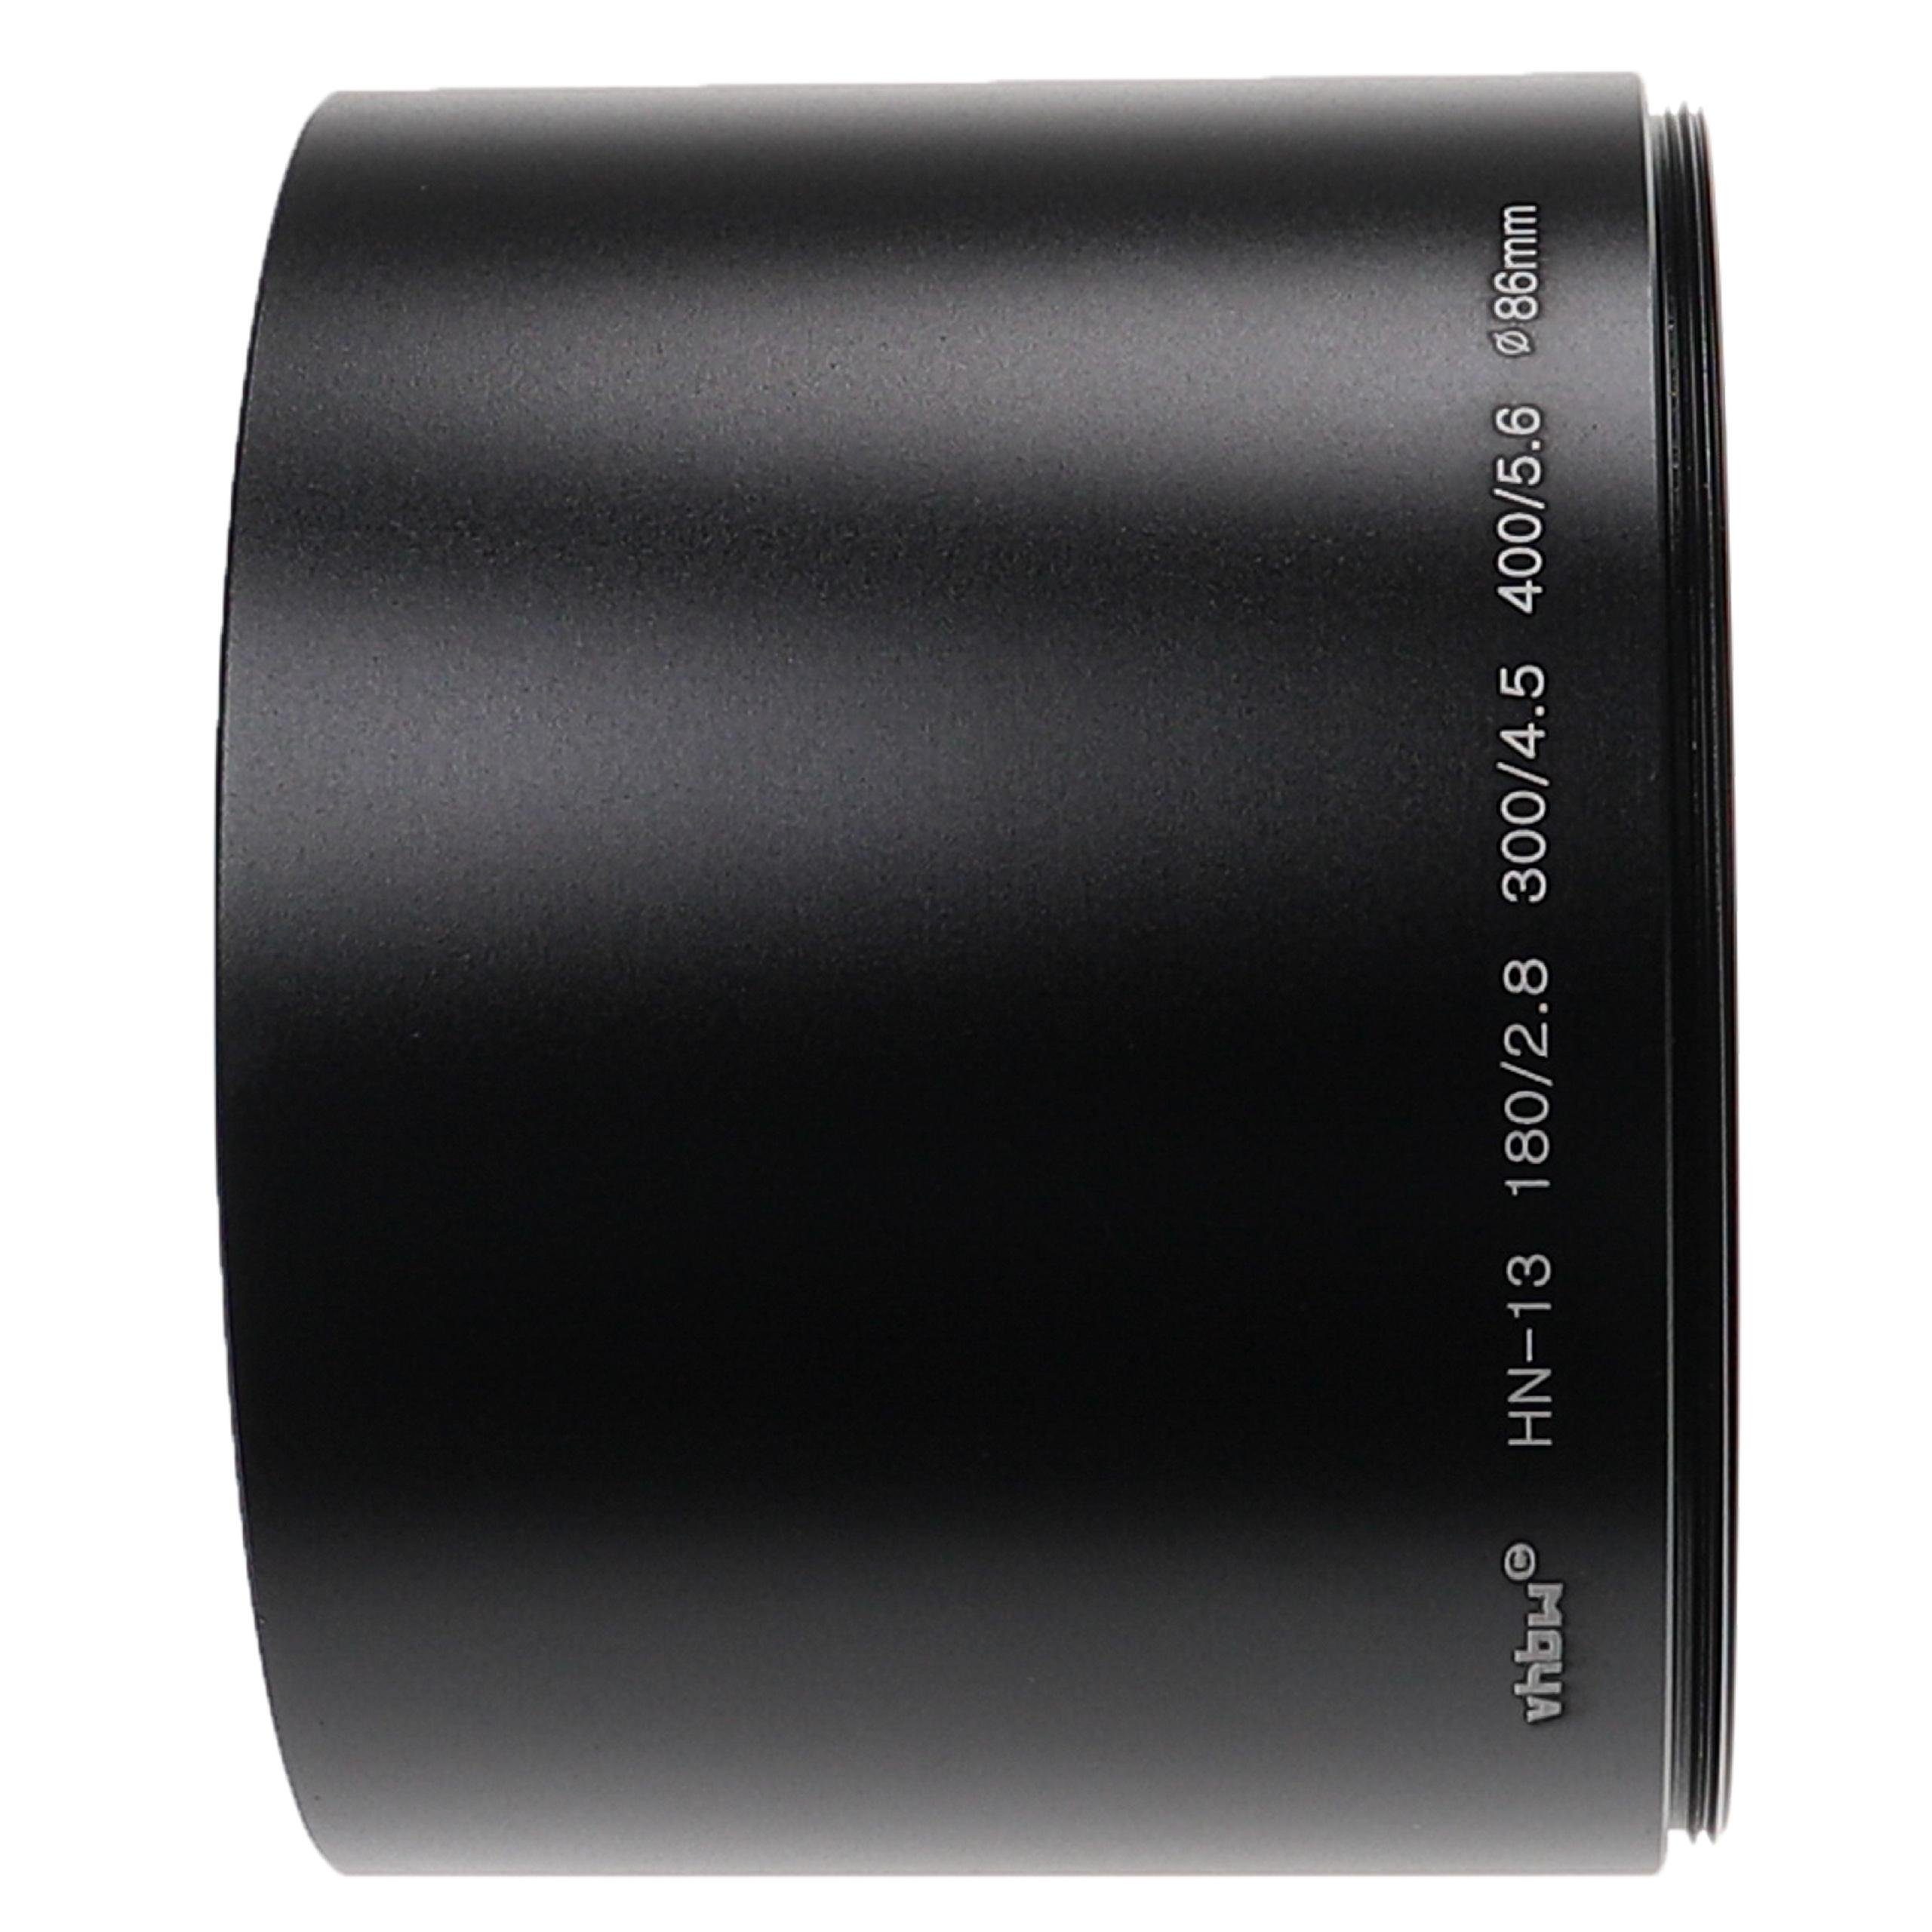 72 180/2.8, passend mit 300/4.5, mm Polfilter vhbw für Objektive Nikon Gegenlichtblende